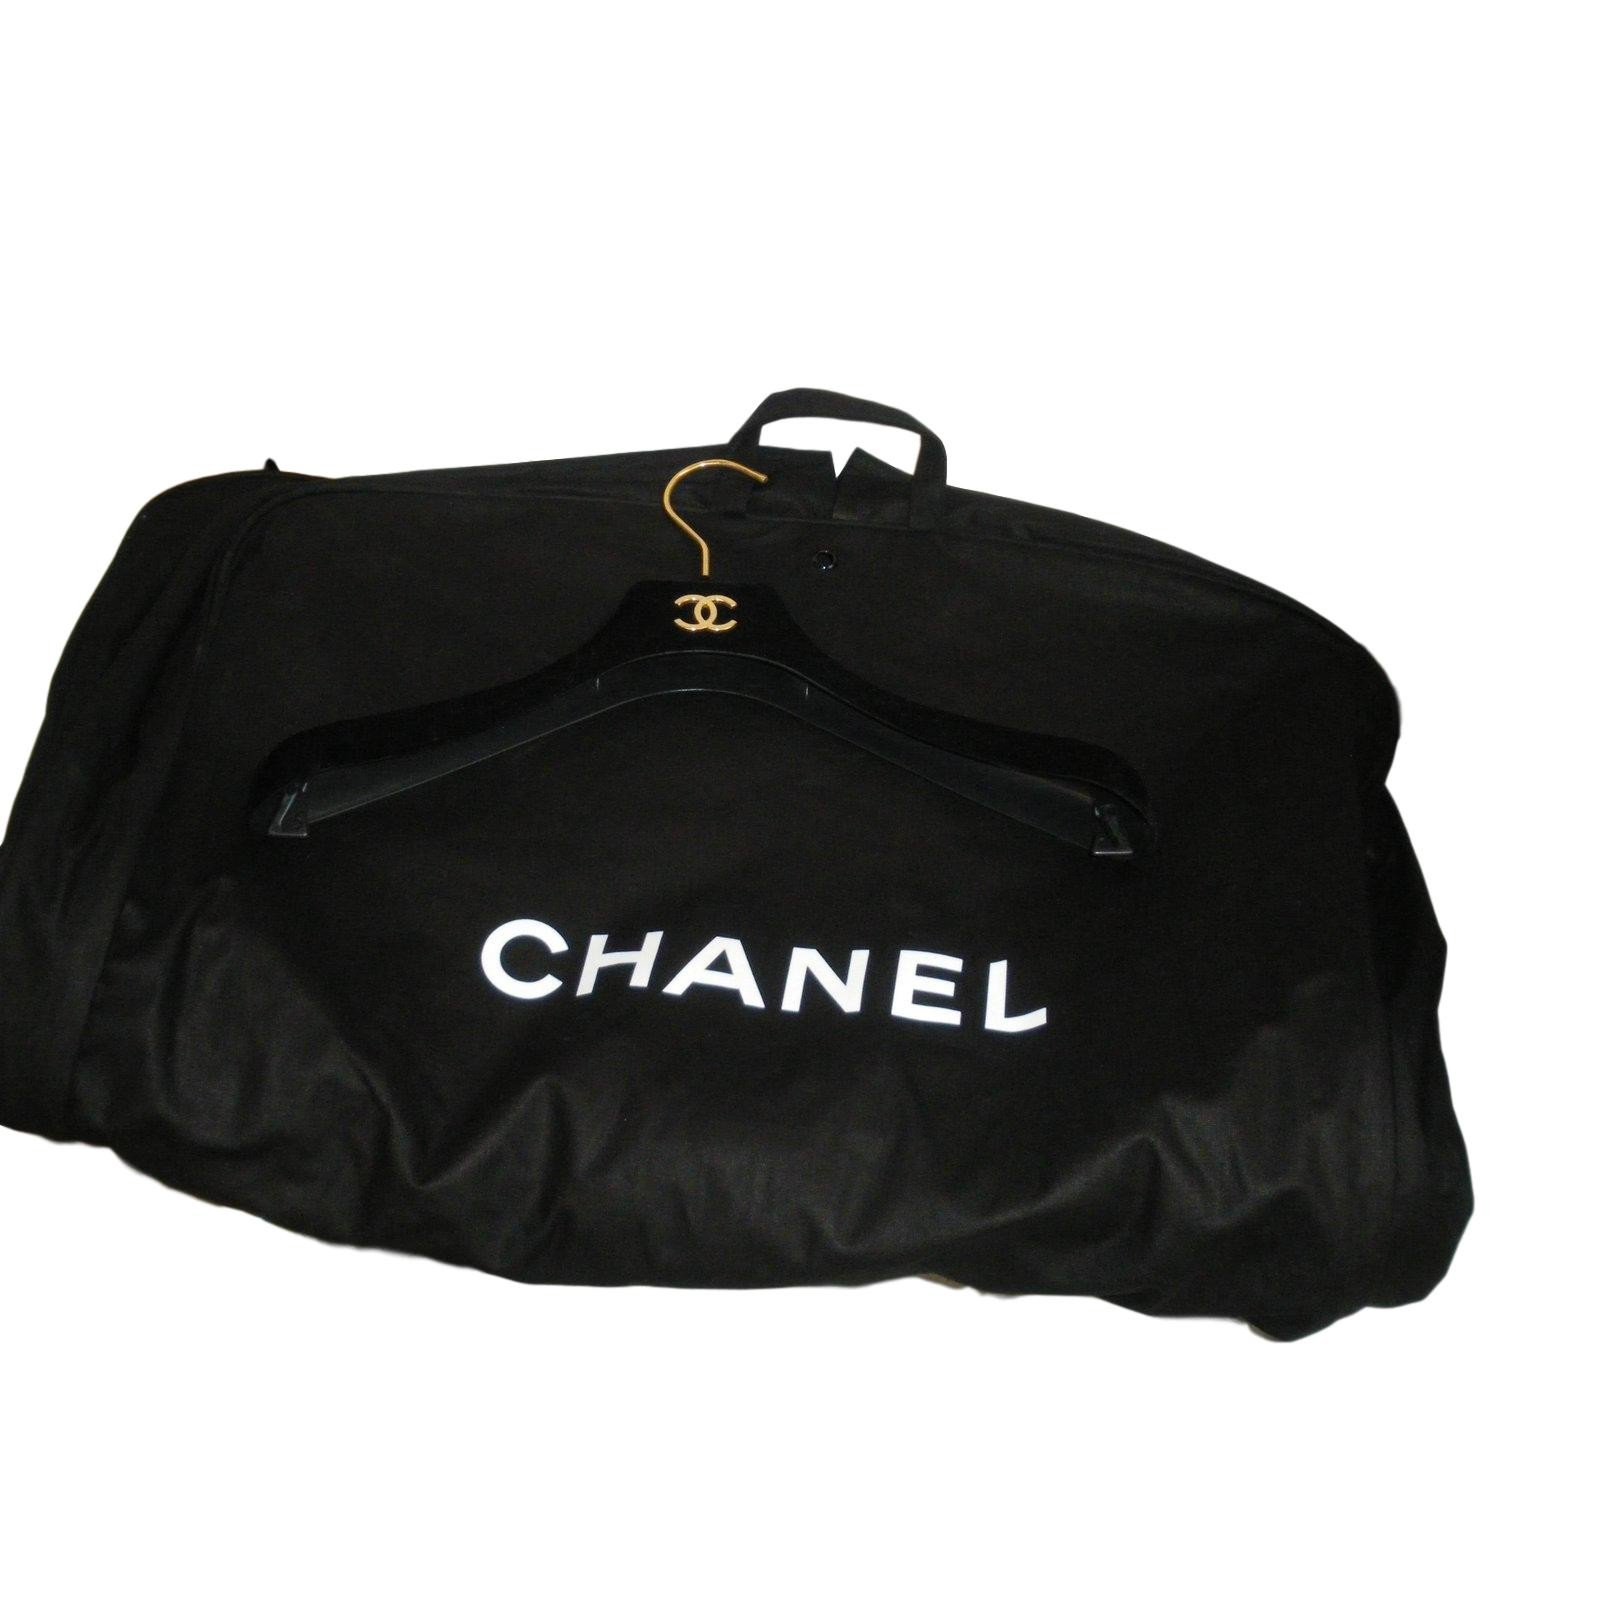 Designer CC signature logo travel duffel gym bag With Strap for